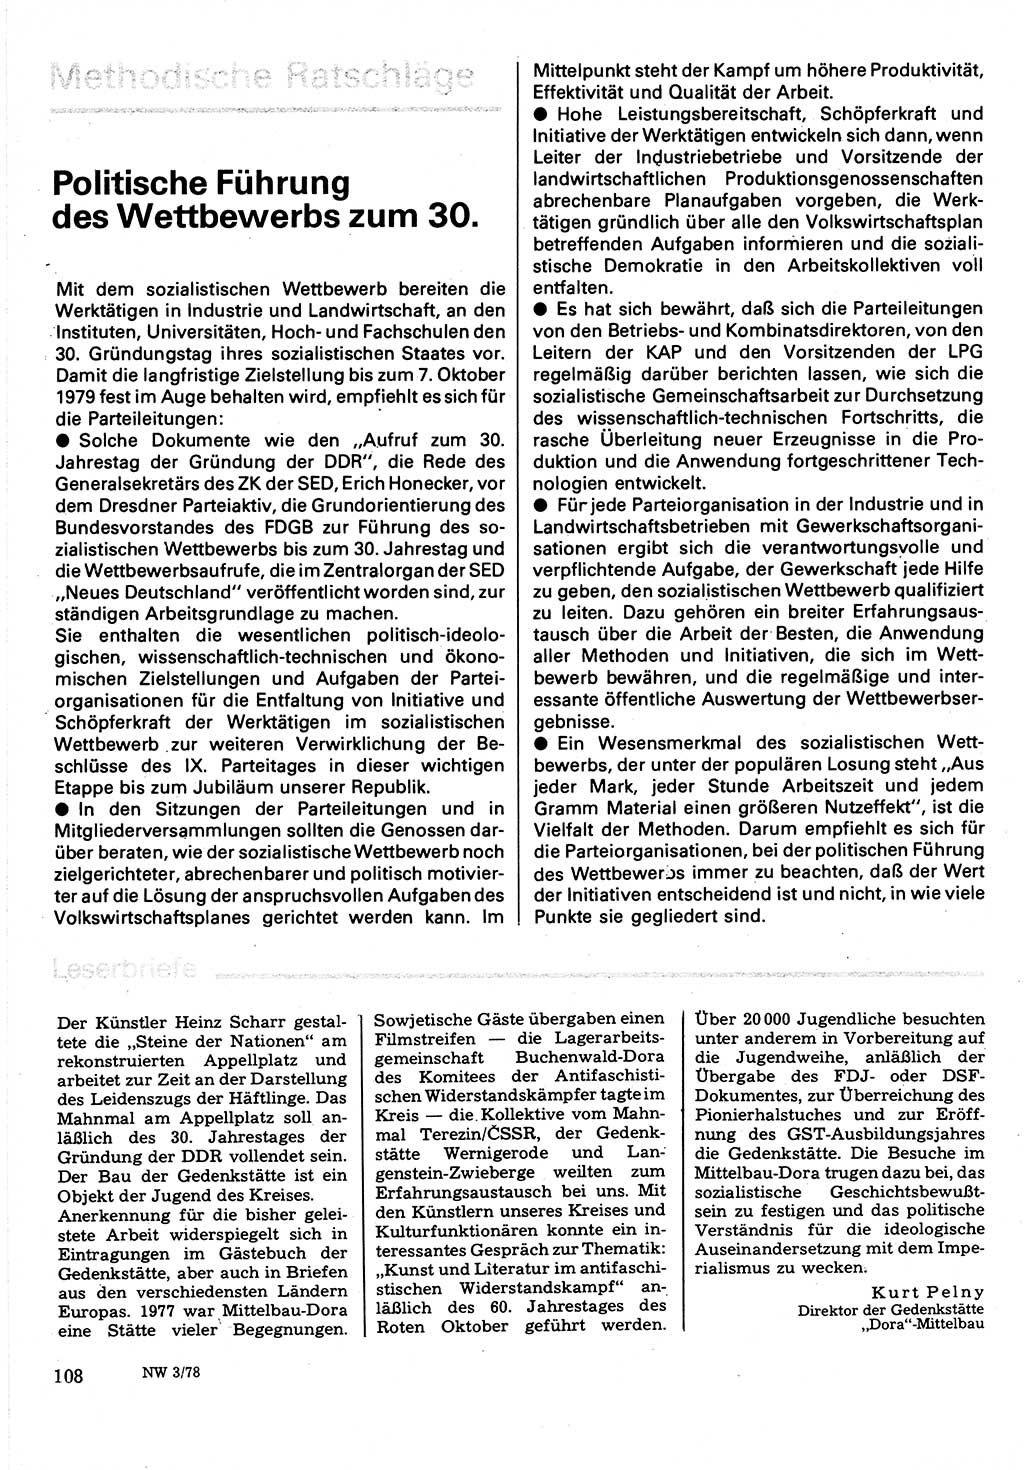 Neuer Weg (NW), Organ des Zentralkomitees (ZK) der SED (Sozialistische Einheitspartei Deutschlands) für Fragen des Parteilebens, 33. Jahrgang [Deutsche Demokratische Republik (DDR)] 1978, Seite 108 (NW ZK SED DDR 1978, S. 108)